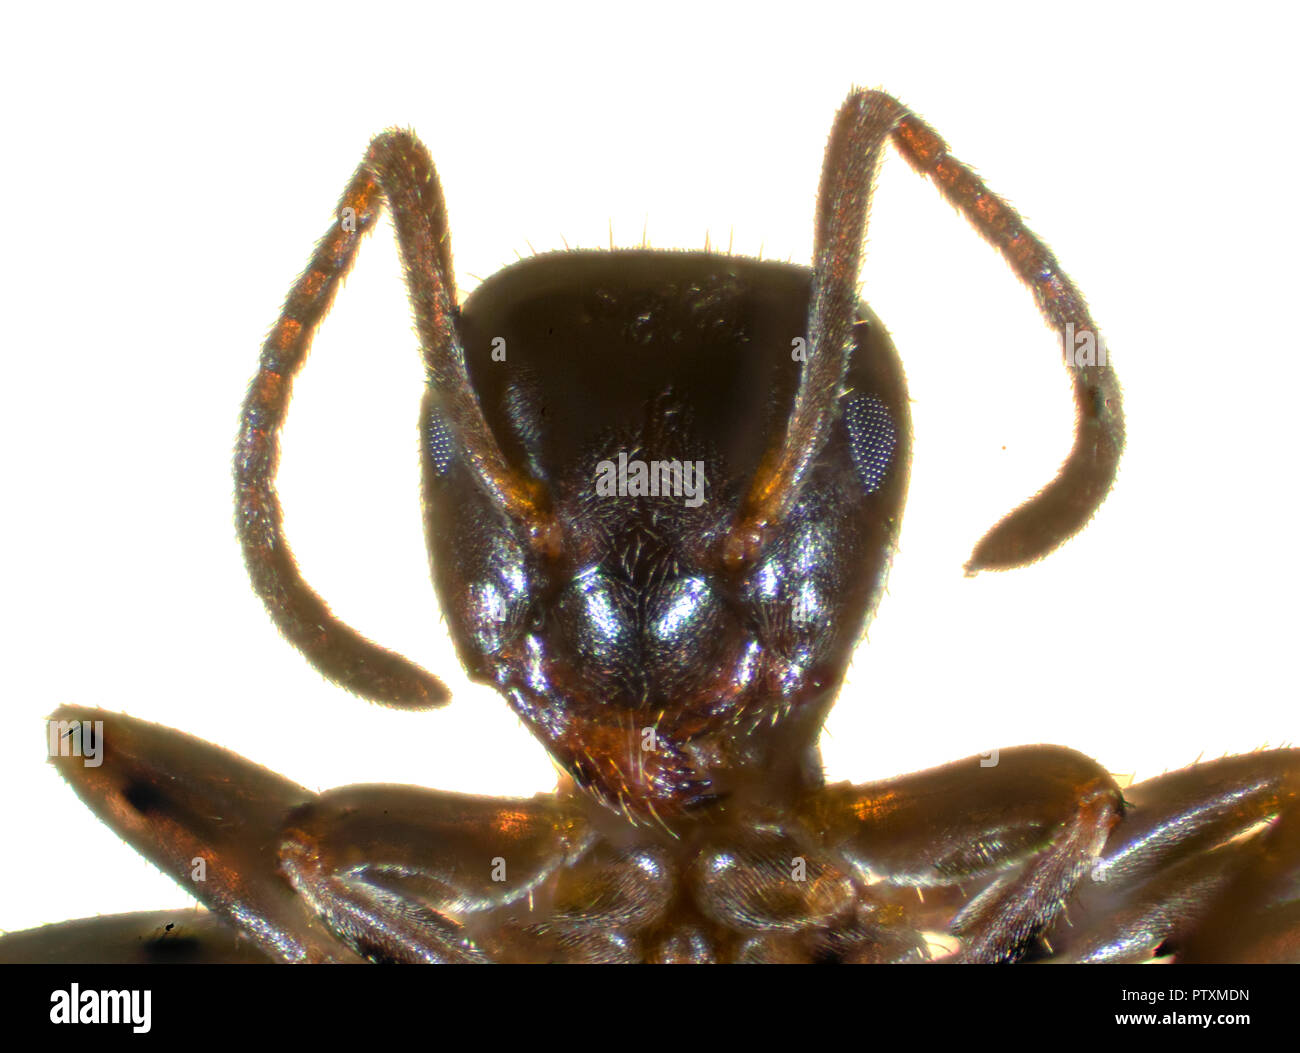 Der Schwarze Garten ant (Lasius Niger), auch als die gemeinsame schwarze Ameise bekannt, ist eine formicine Ant, die Art der Untergattung Lasius. Stockfoto